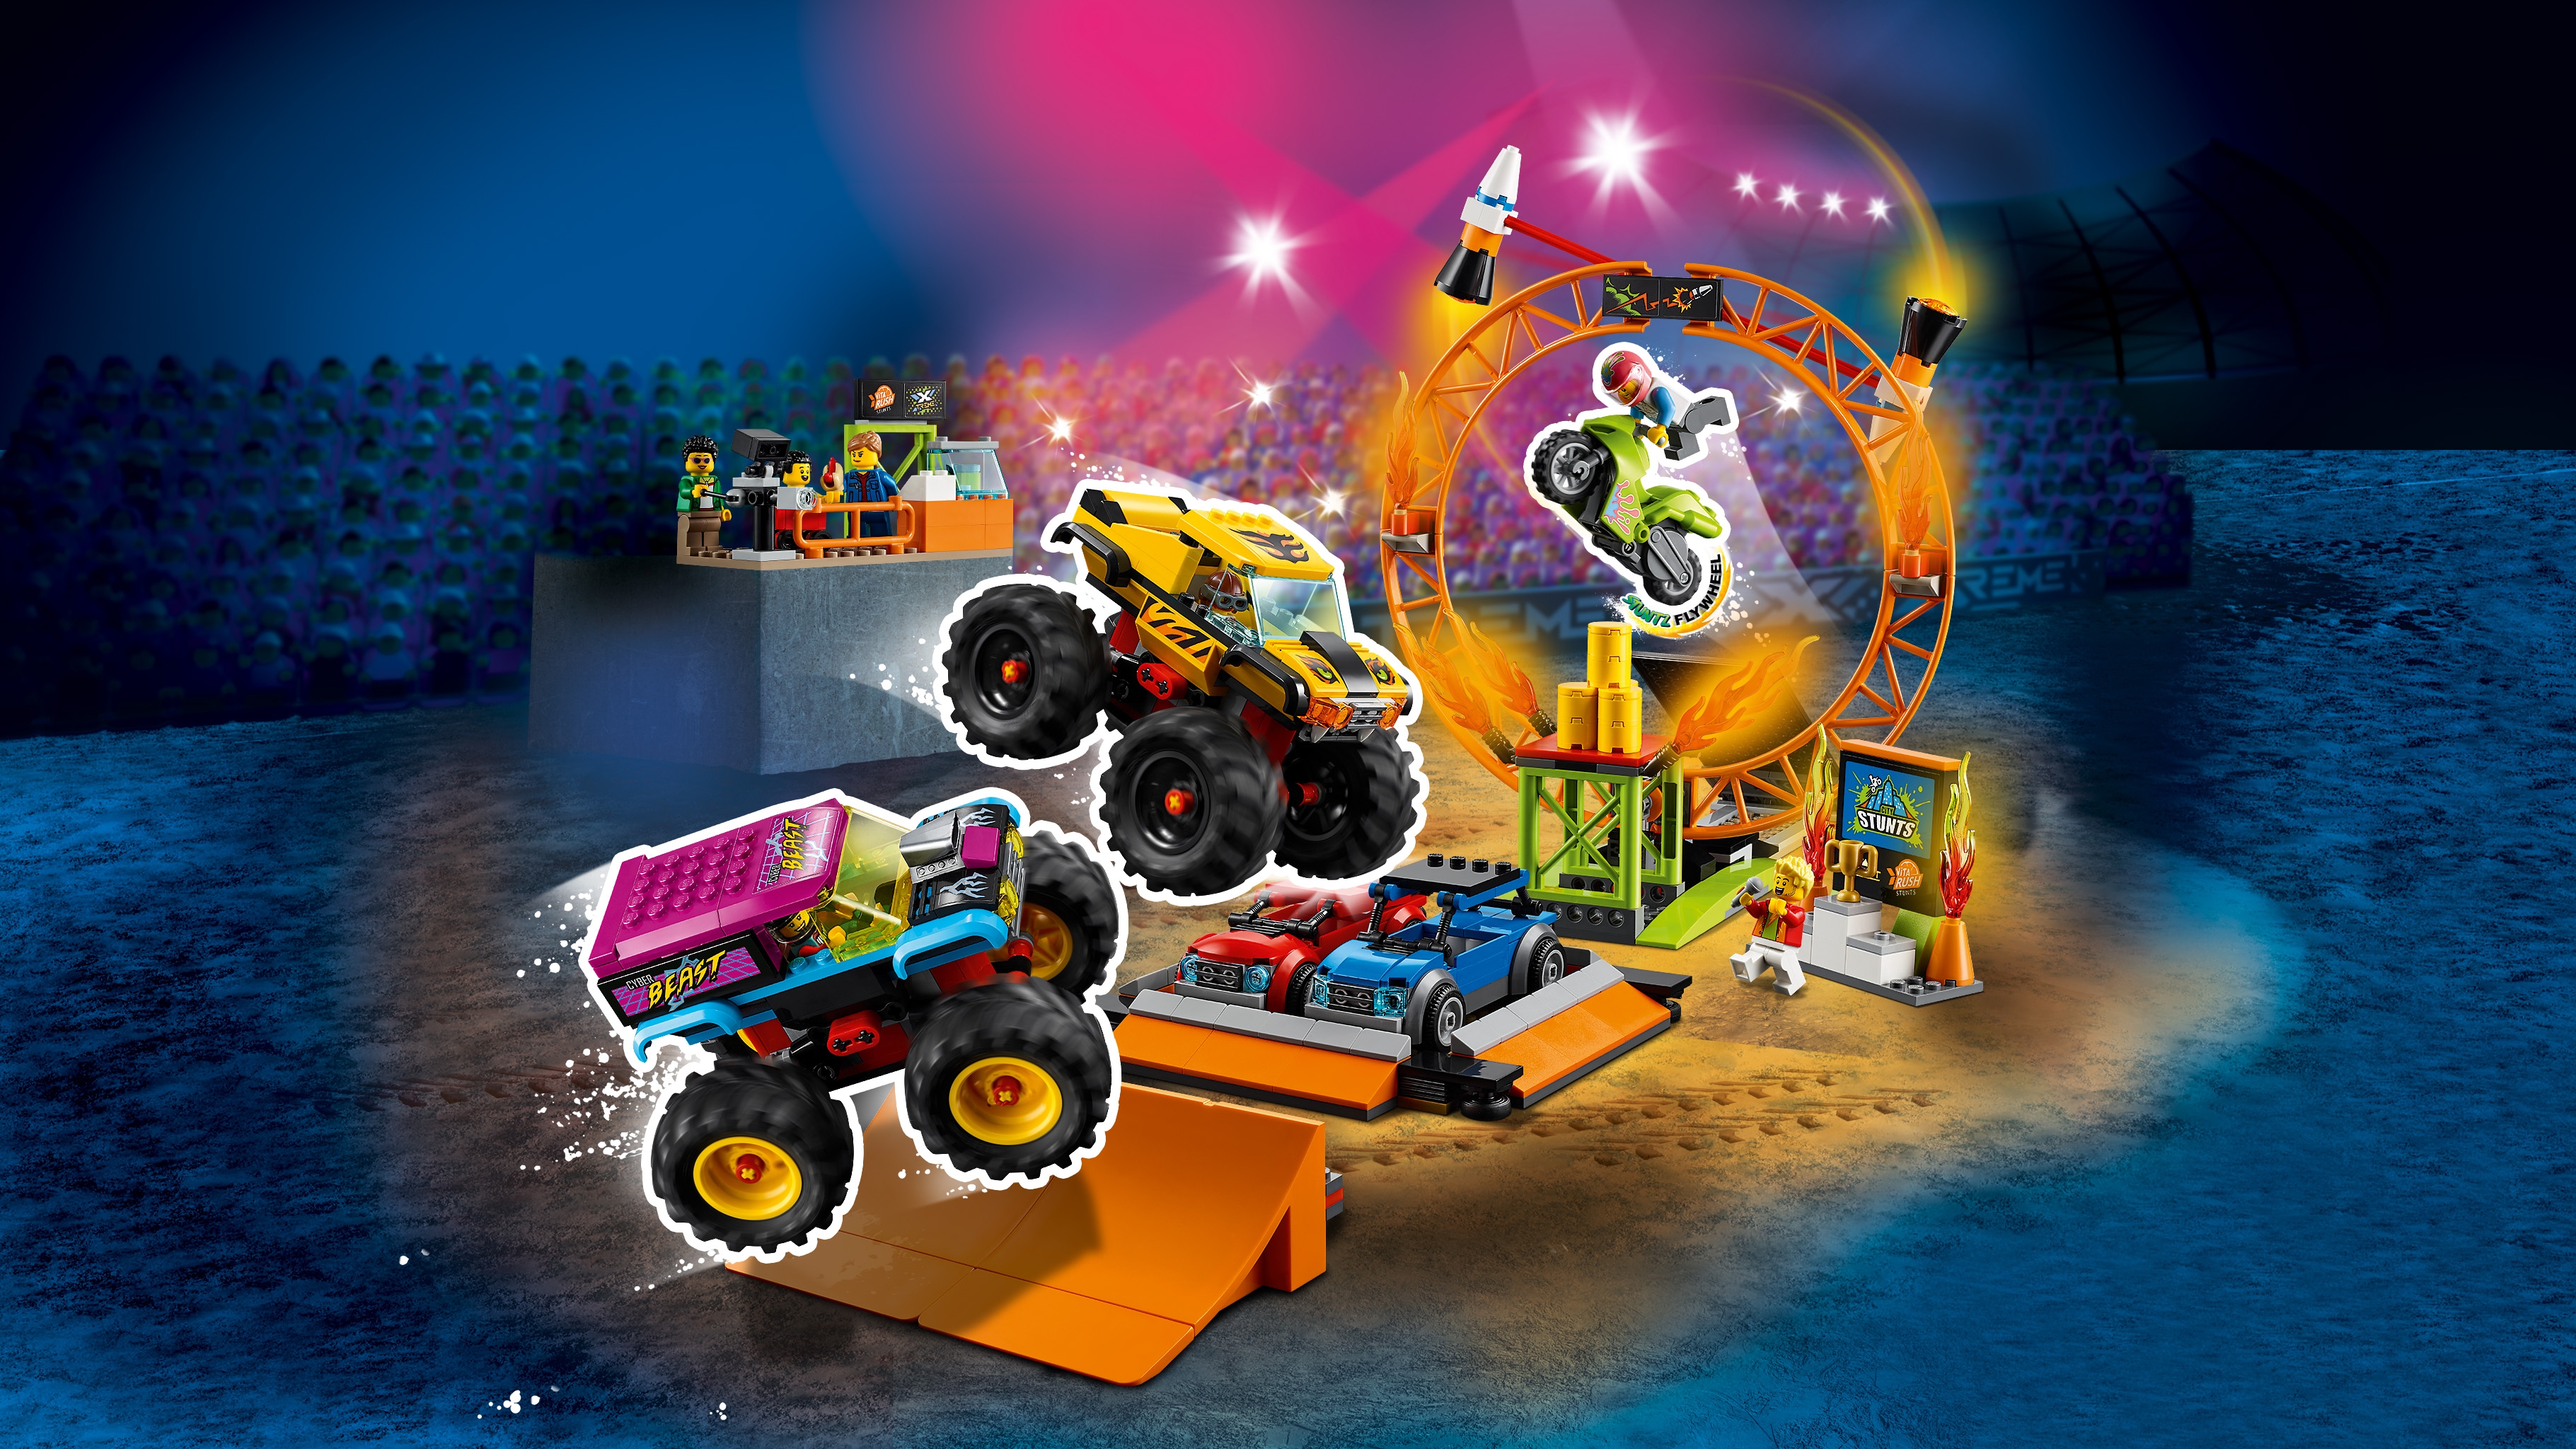 Stunt Show Arena 60295 - LEGO® Sets City - kids LEGO.com for